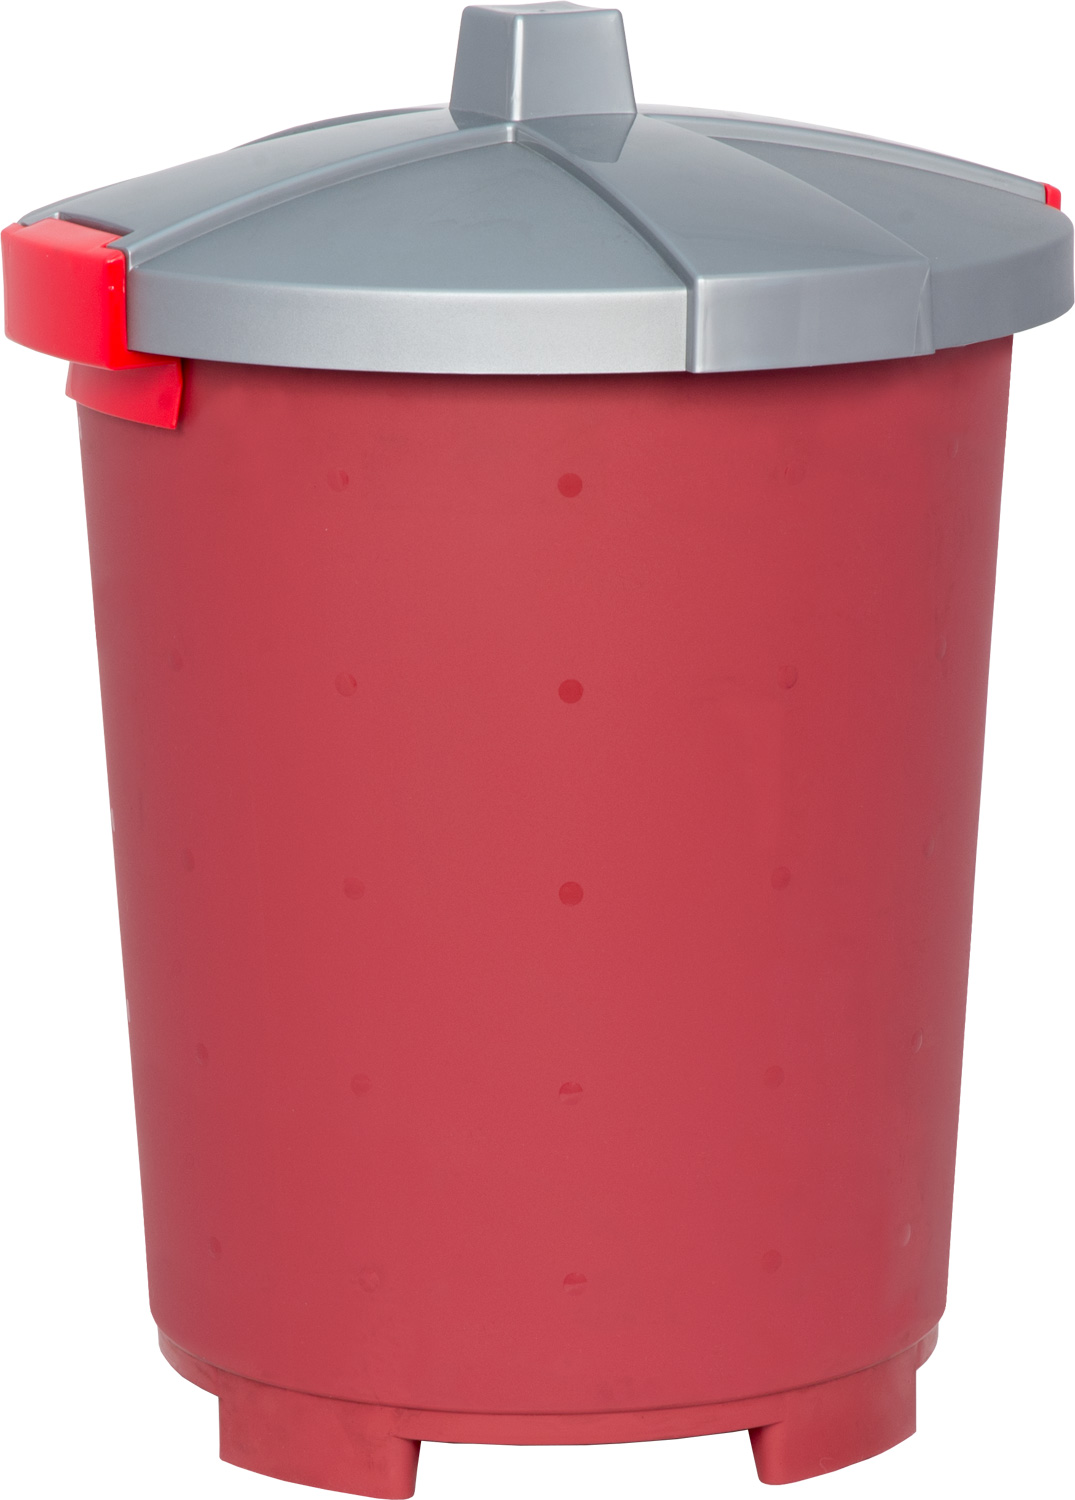 Бак пластиковый для мусора МБ-65-4 бордовый с крышкой